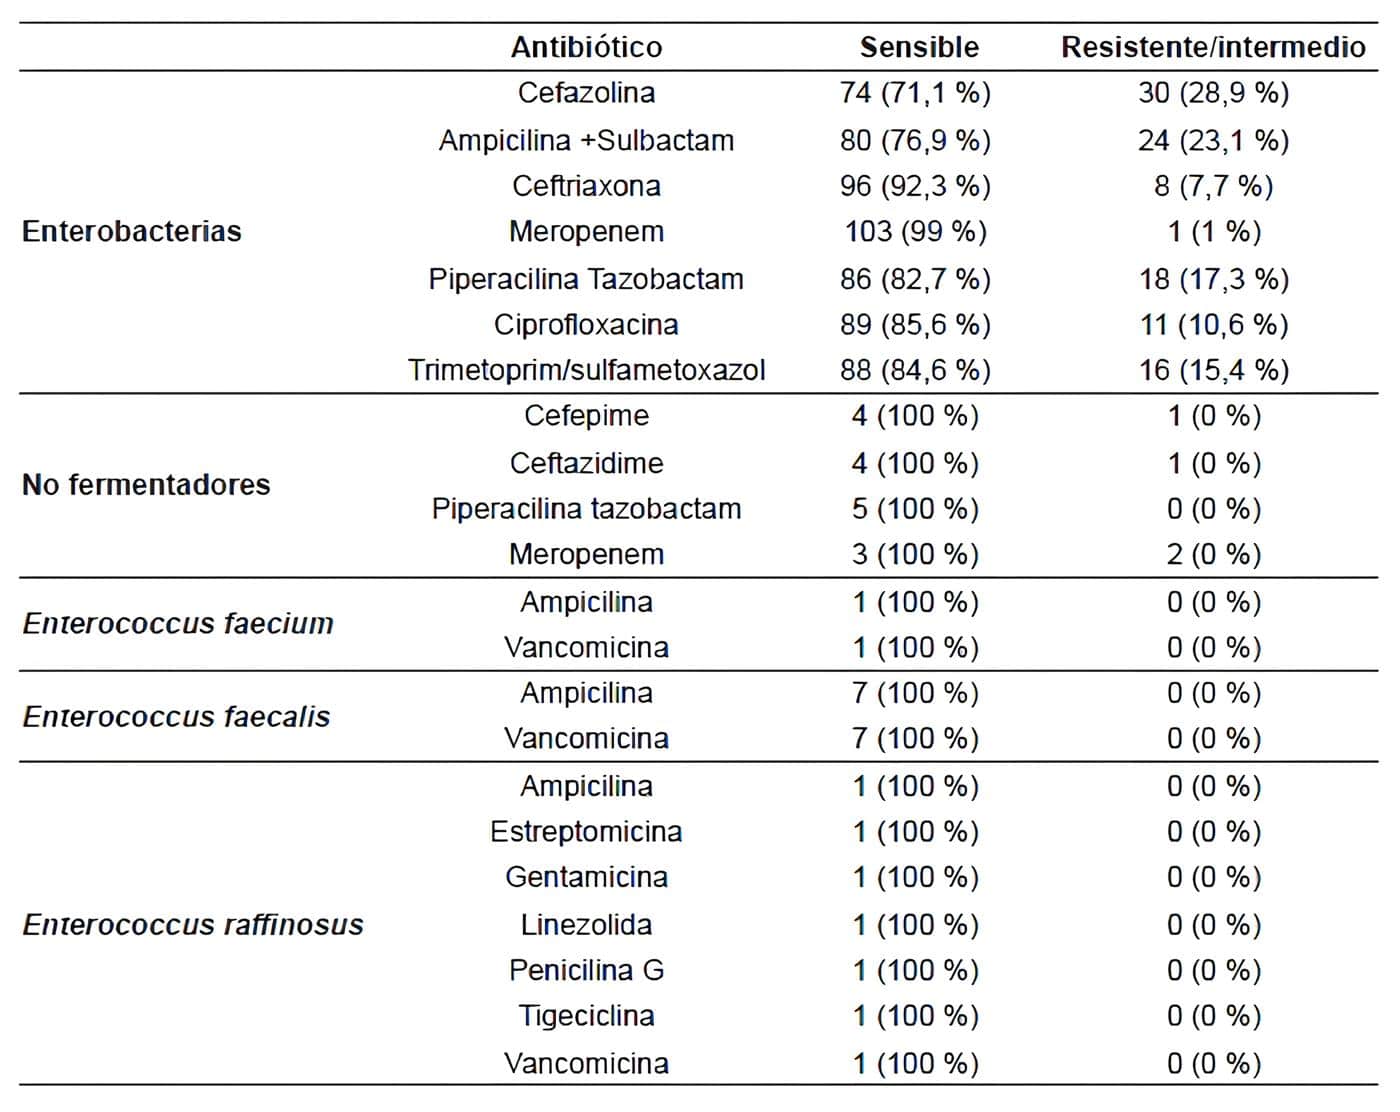 Resistencia antimicrobiana por antibiótico  -Pacientes con Colelitiasis y Colecistitis